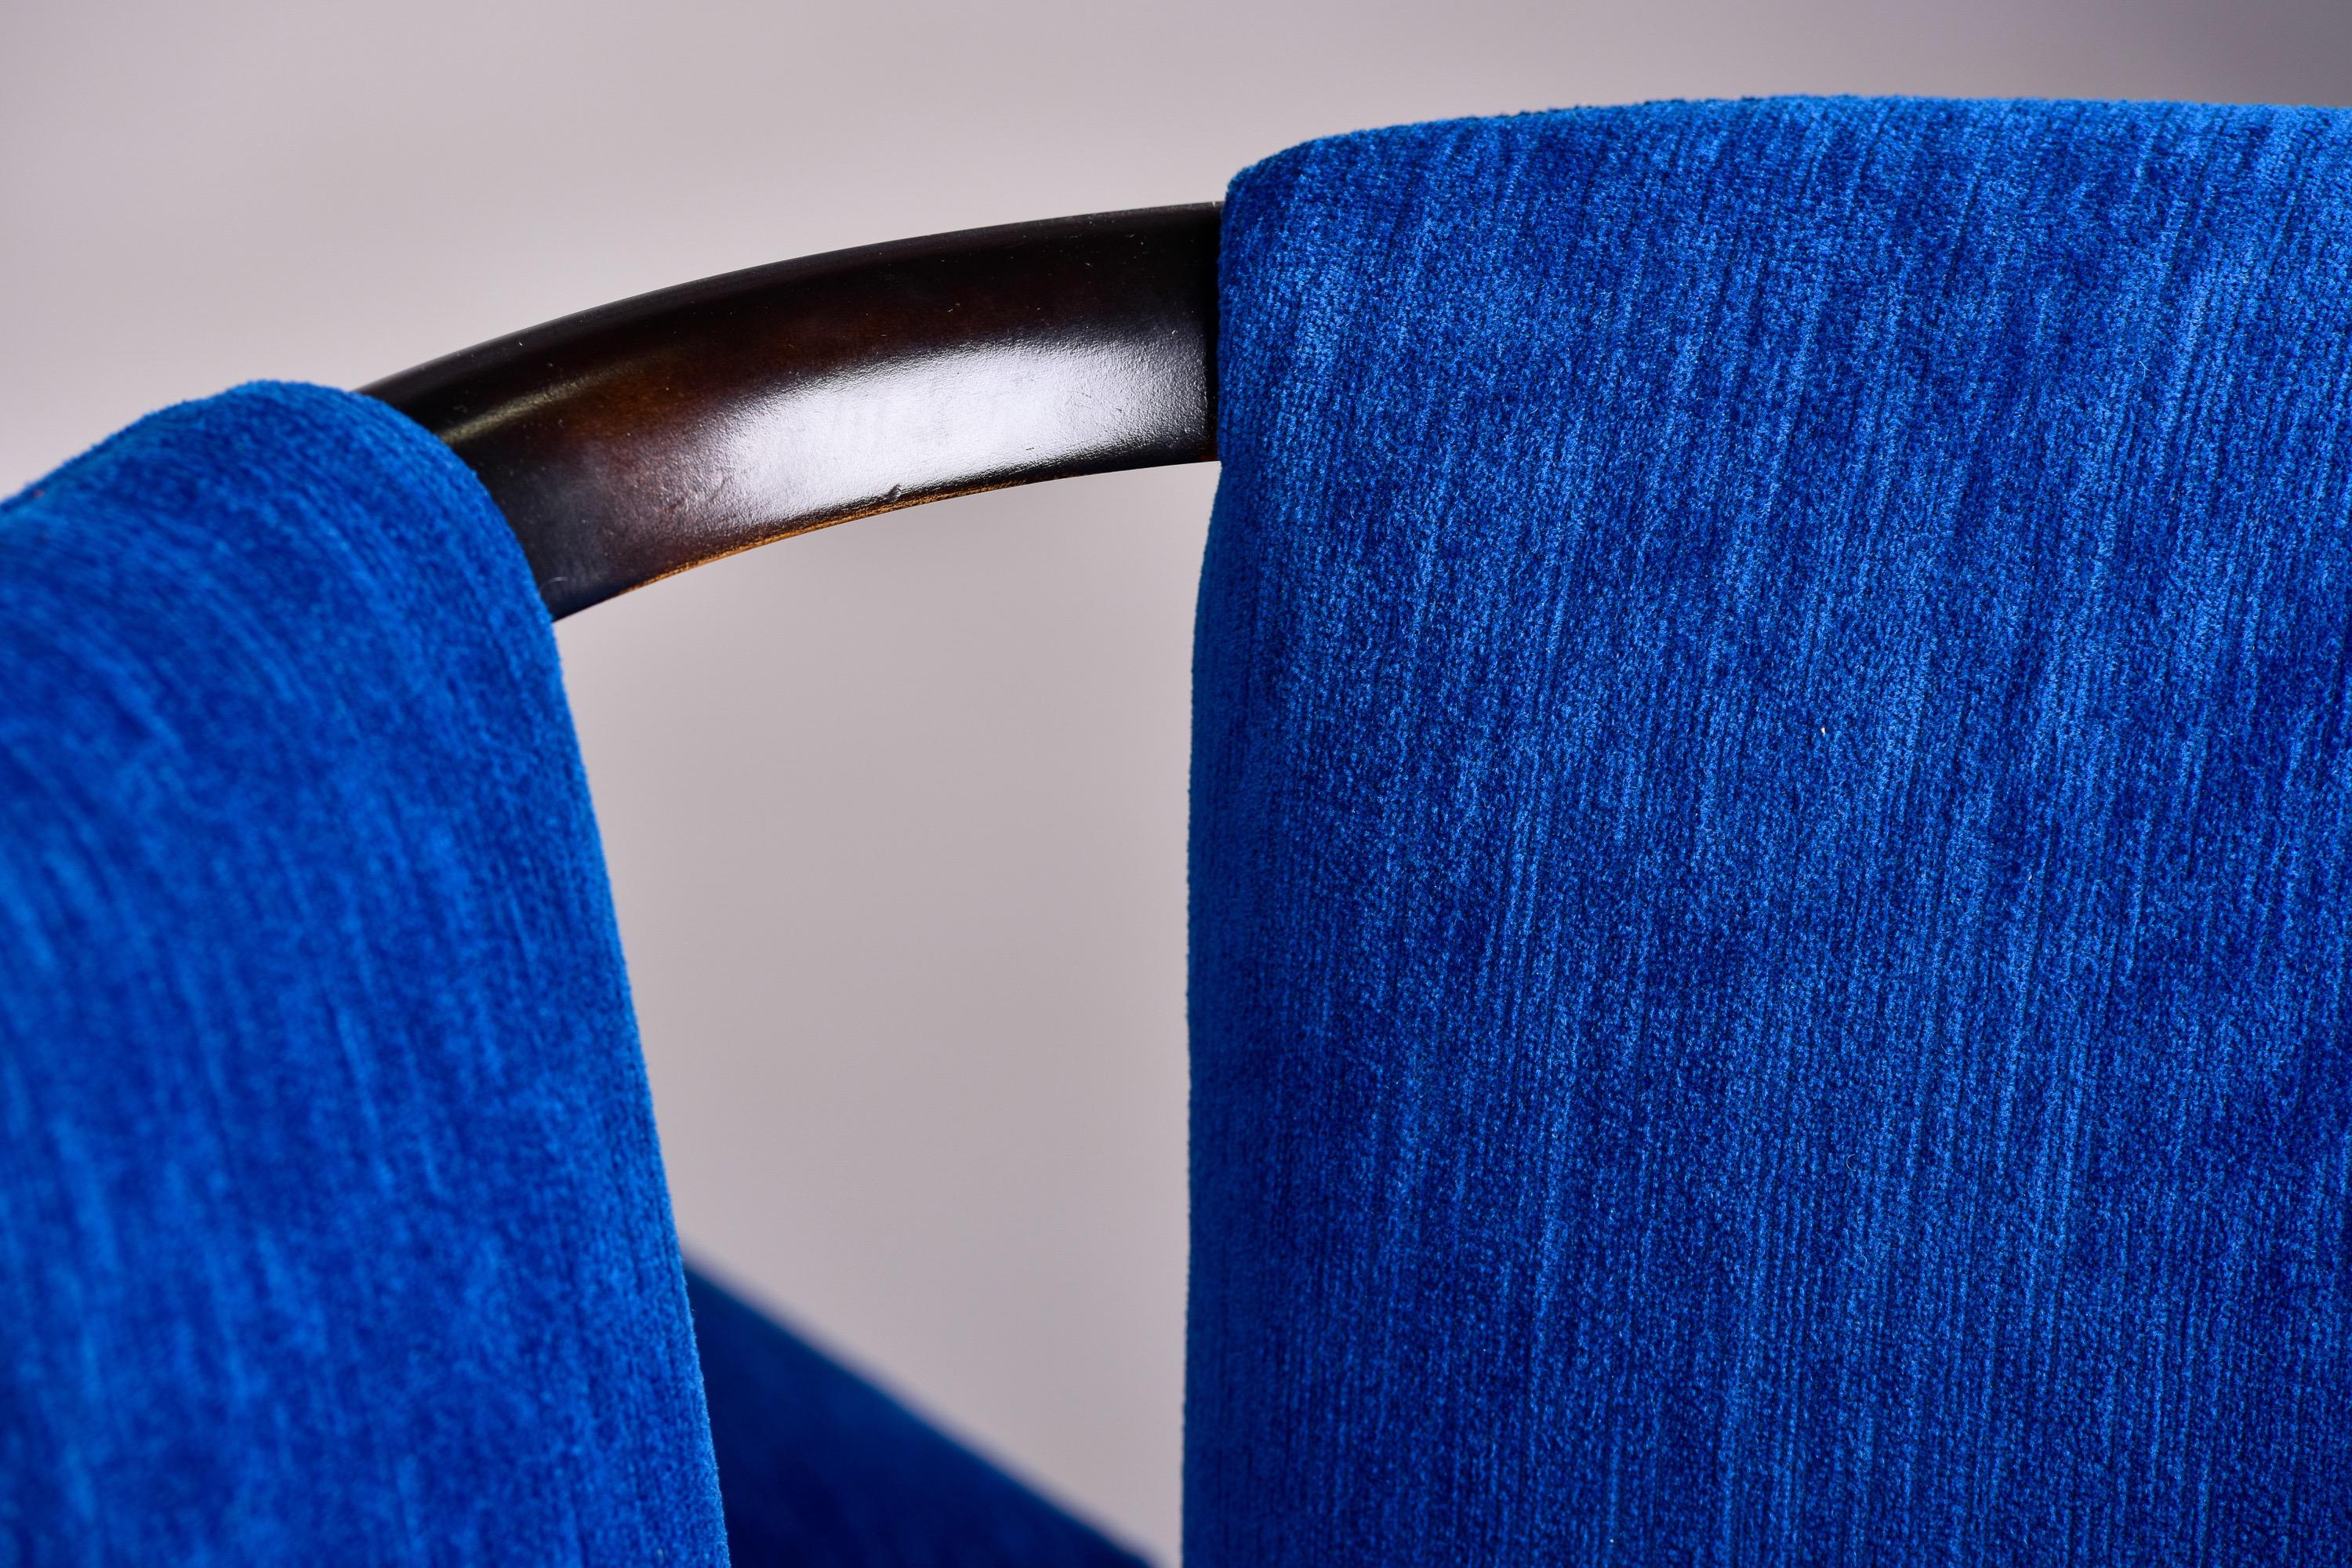 Ensemble de six chaises de salle à manger des années 1950, à la manière de Paul Frankl. Trouvées aux États-Unis - fabricant inconnu - ces chaises ont un style similaire à la chaise Corset conçue par Paul Frankl pour Johnson Furniture. Cet ensemble